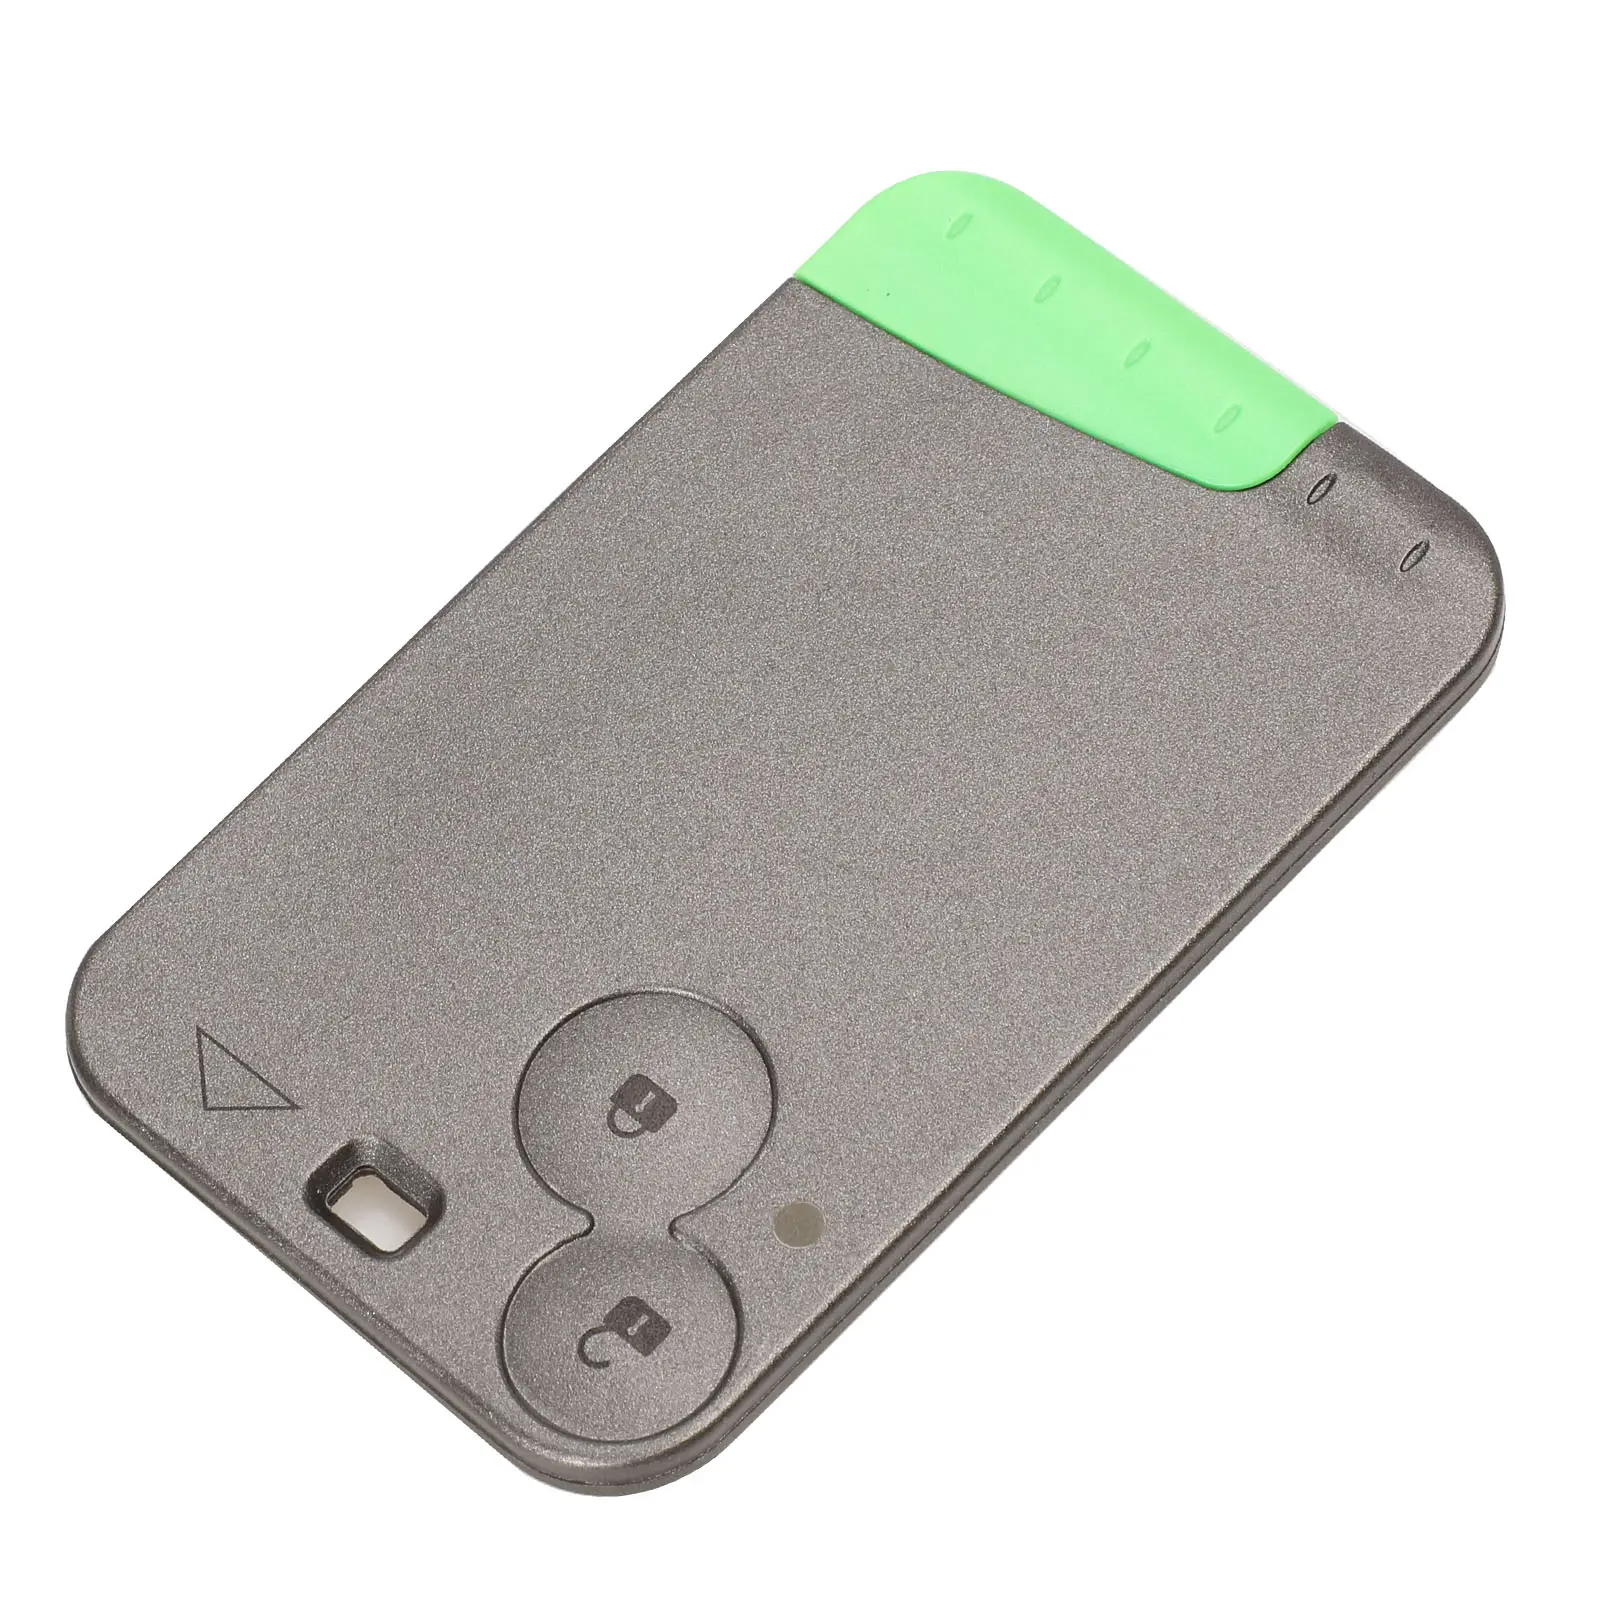 2 बटन स्मार्ट रिमोट कार कुंजी एफओबी PCF7947 रेनॉल्ट लगुना स्पास वेल-काफ़ी चिप के लिए 433Mhz स्मार्ट कार्ड रिमोट